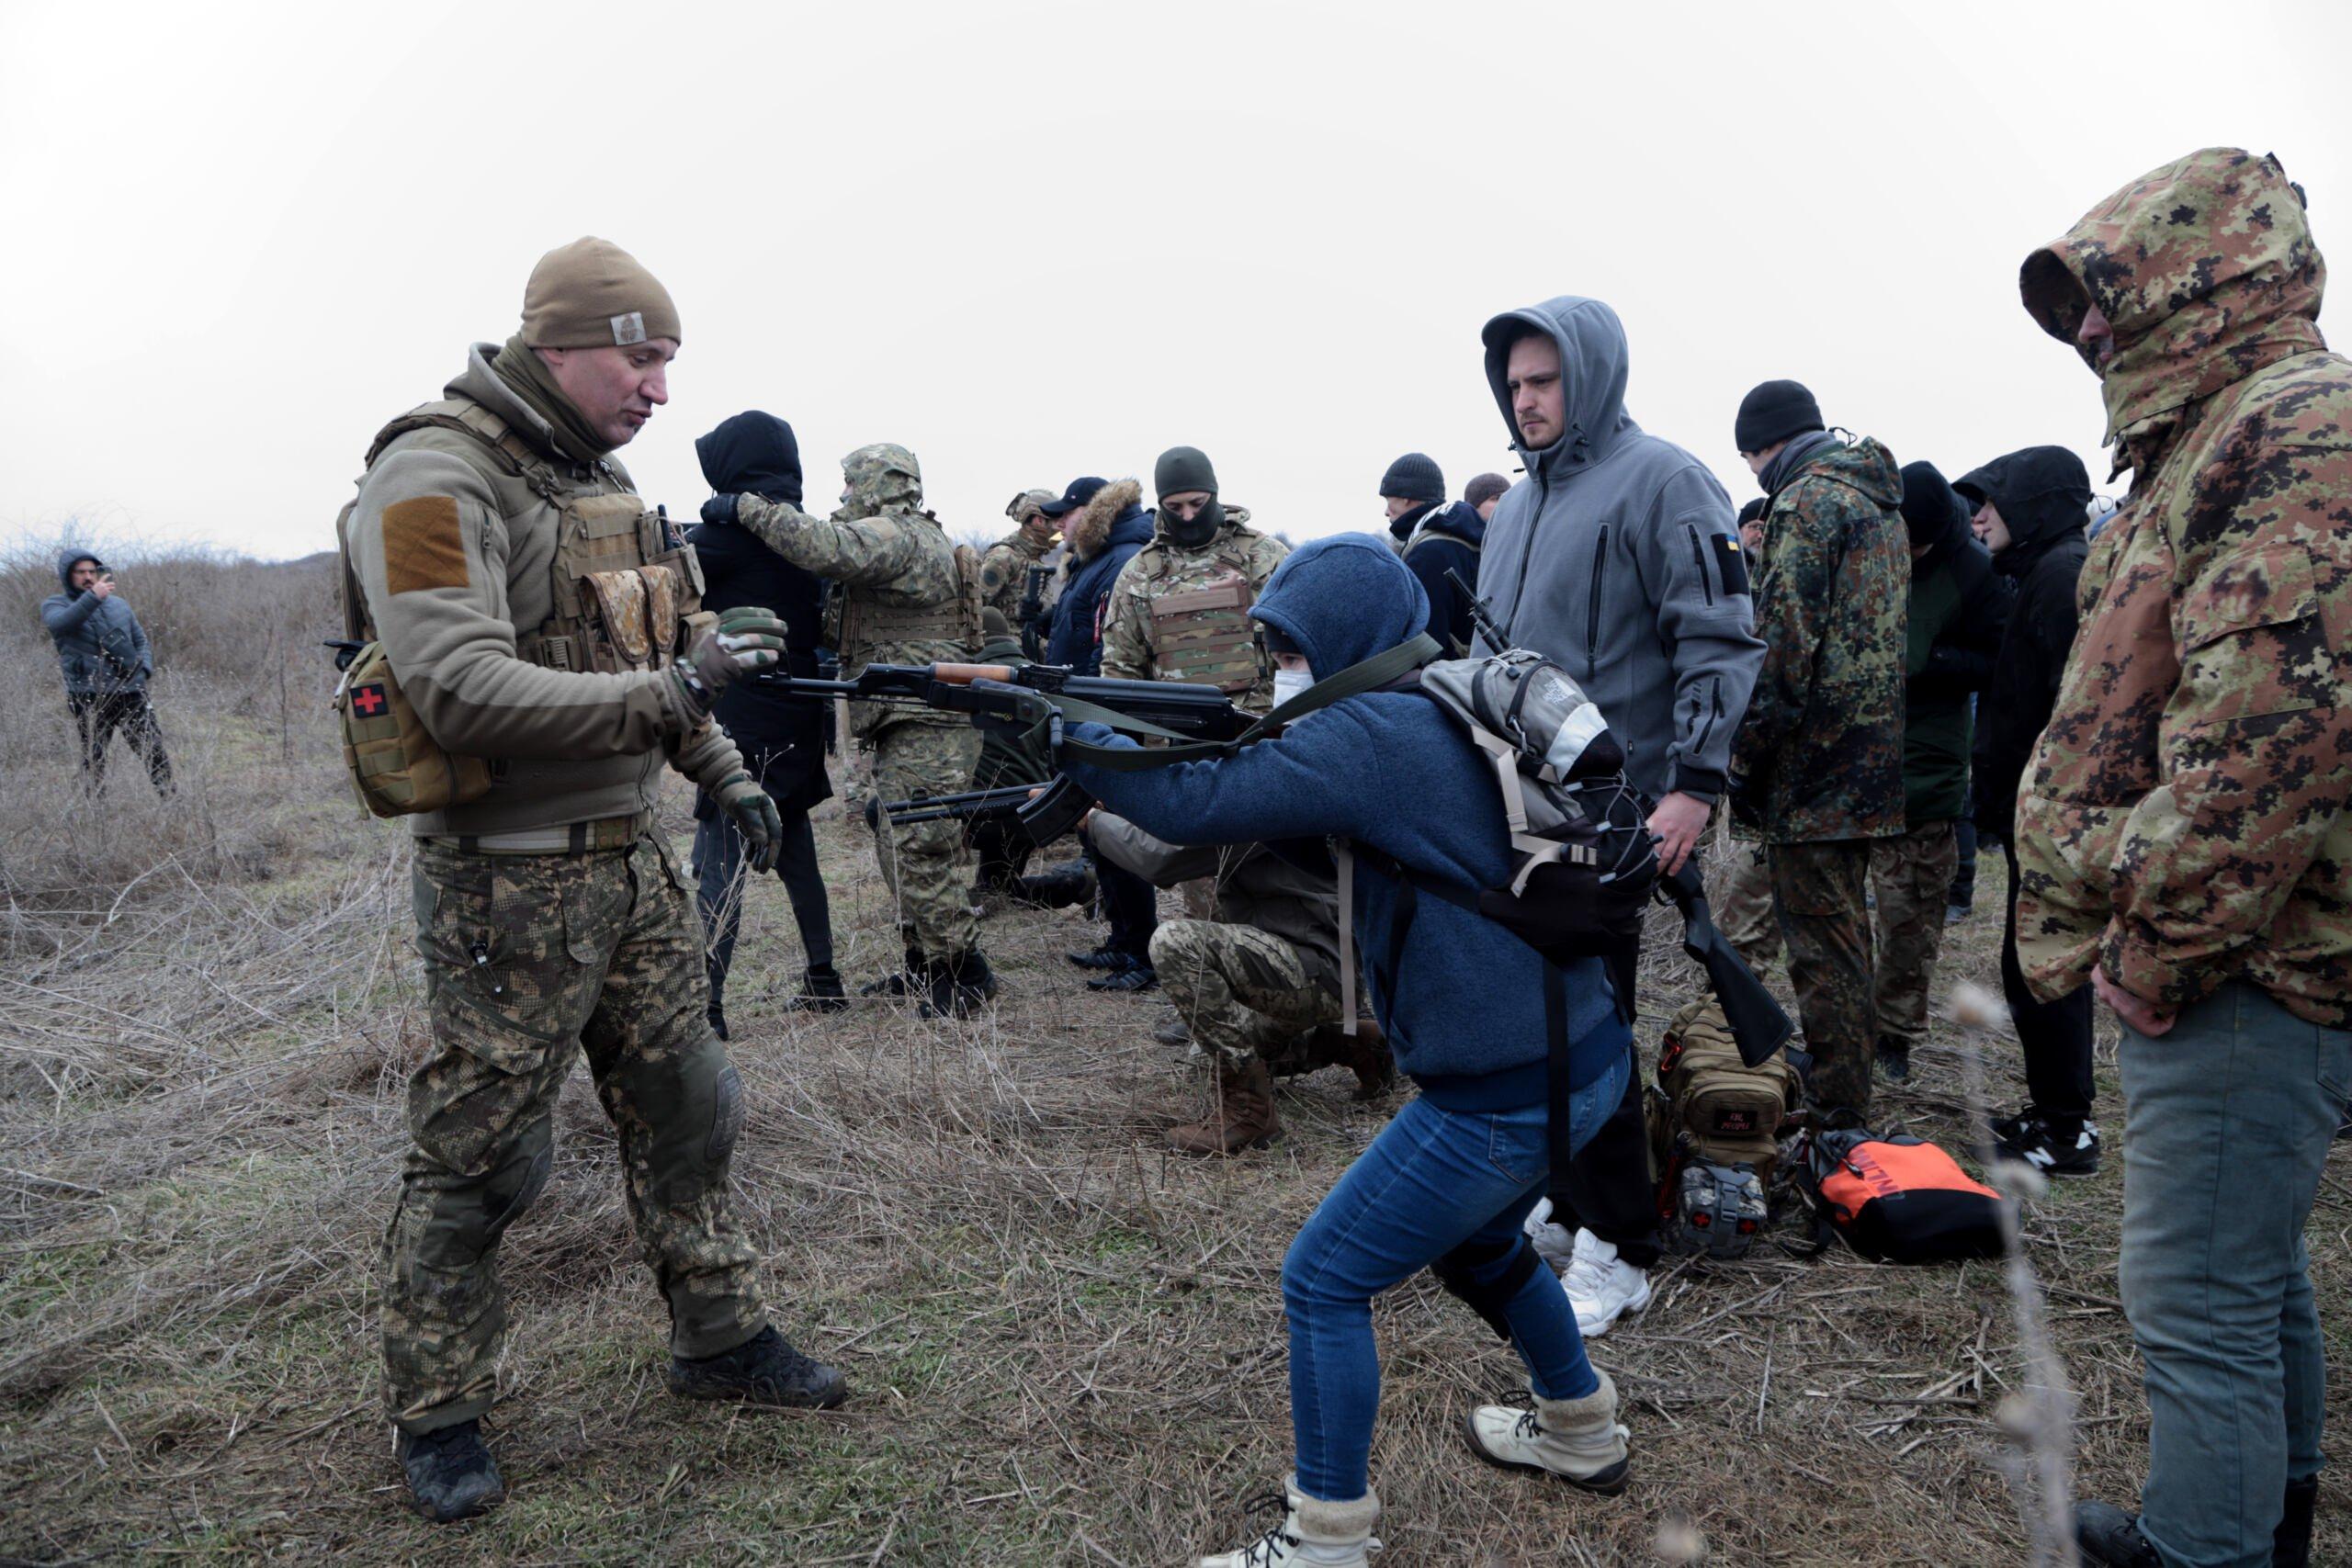 Grupa ludzi, część ubrana w wojskowe mundury, na pierwszym planie osoba w cywilnych ubraniach celuje z karabinu